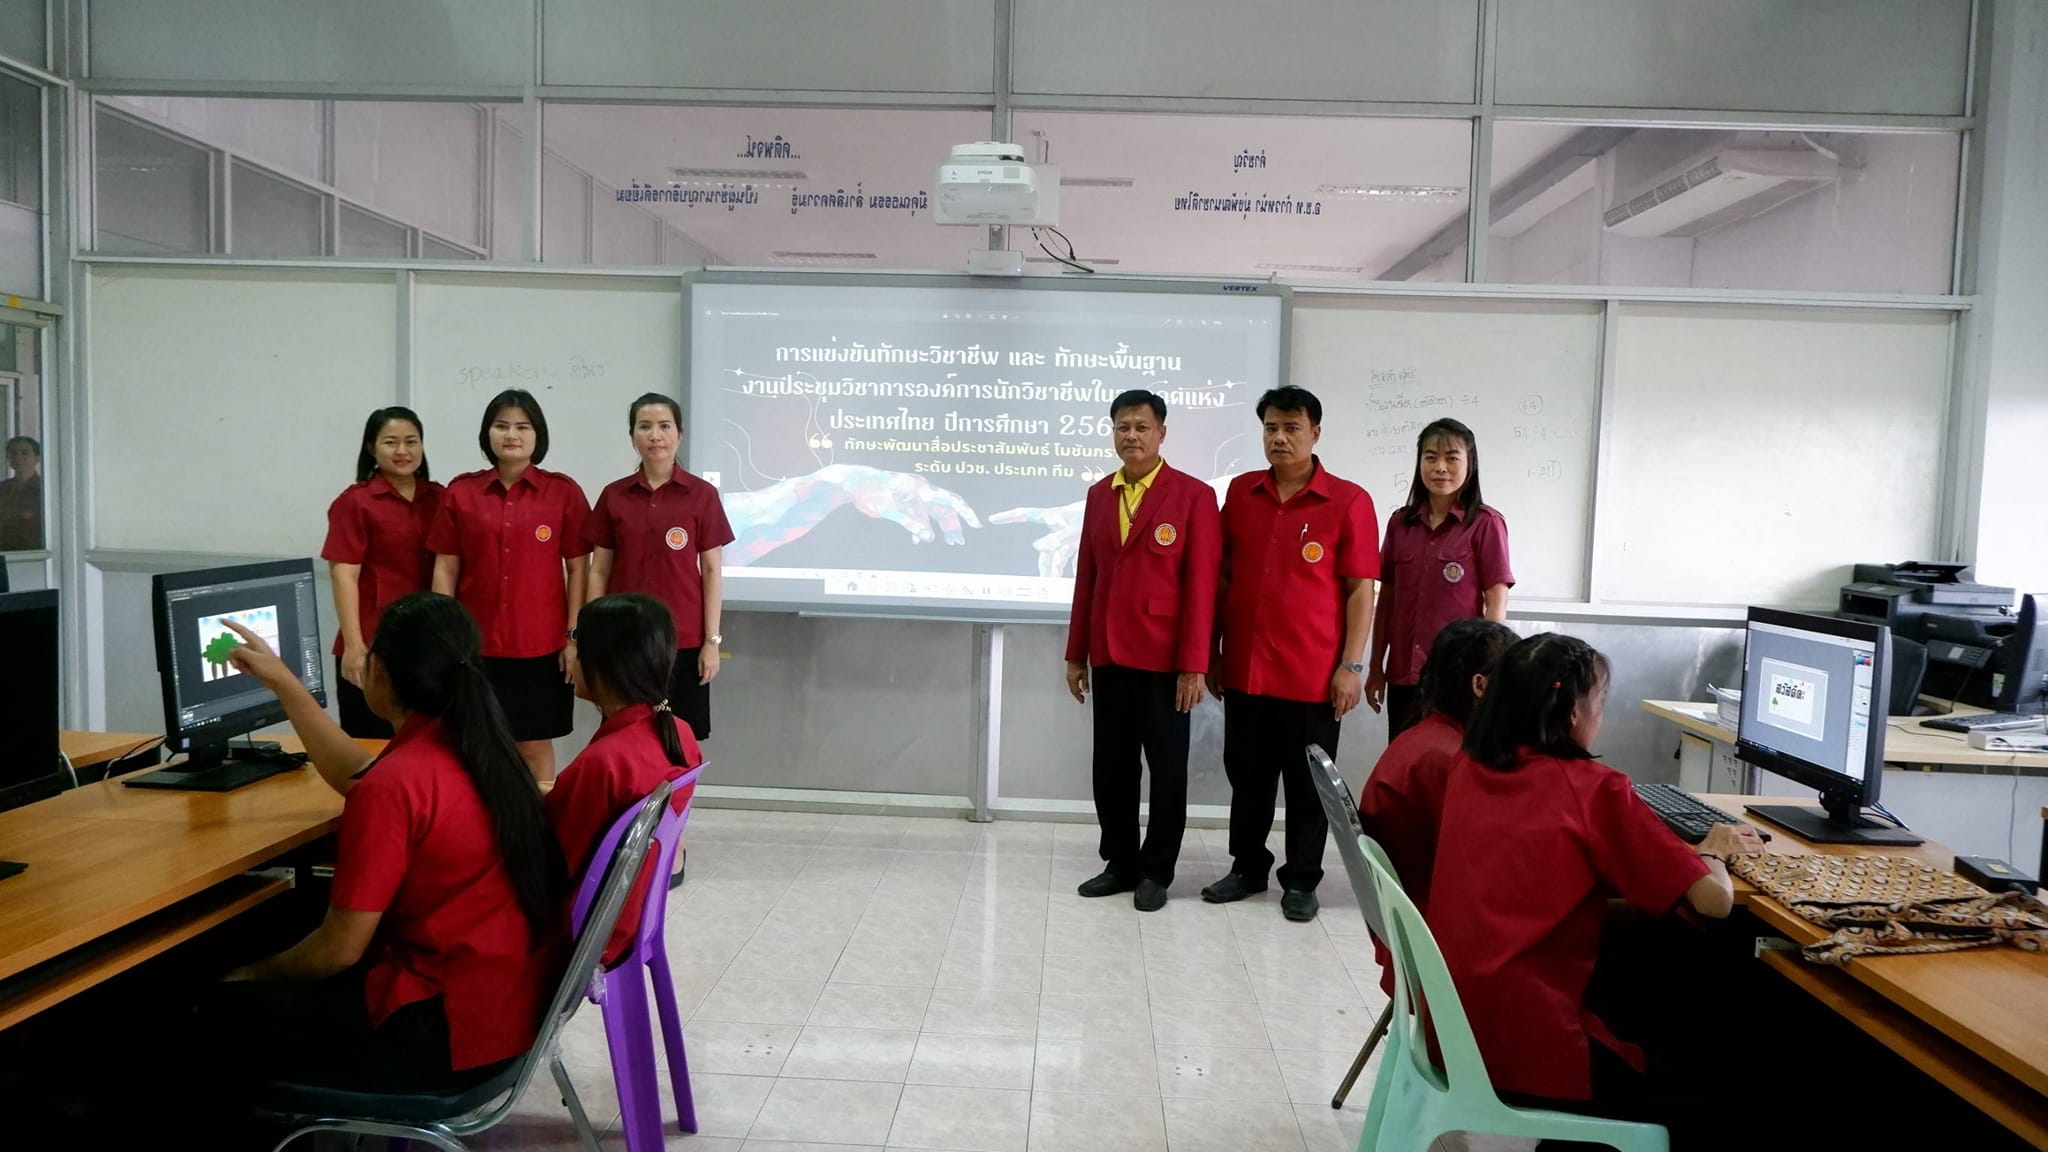 คณะผู้บริหารวิทยาลัยการอาชีพอินทร์บุรี ตรวจเยี่ยมให้กำลังใจนักเรียนนักศึกษาแผนกวิชาคอมพิวเตอร์ธุรกิจ ระดับชั้น ปวช. และระดับชั้น ปวส.ในการแข่งขันทักษะวิชาชีพและทักษะพื้นฐาน ระดับสถานศึกษา ประจำปีการศึกษา 2566